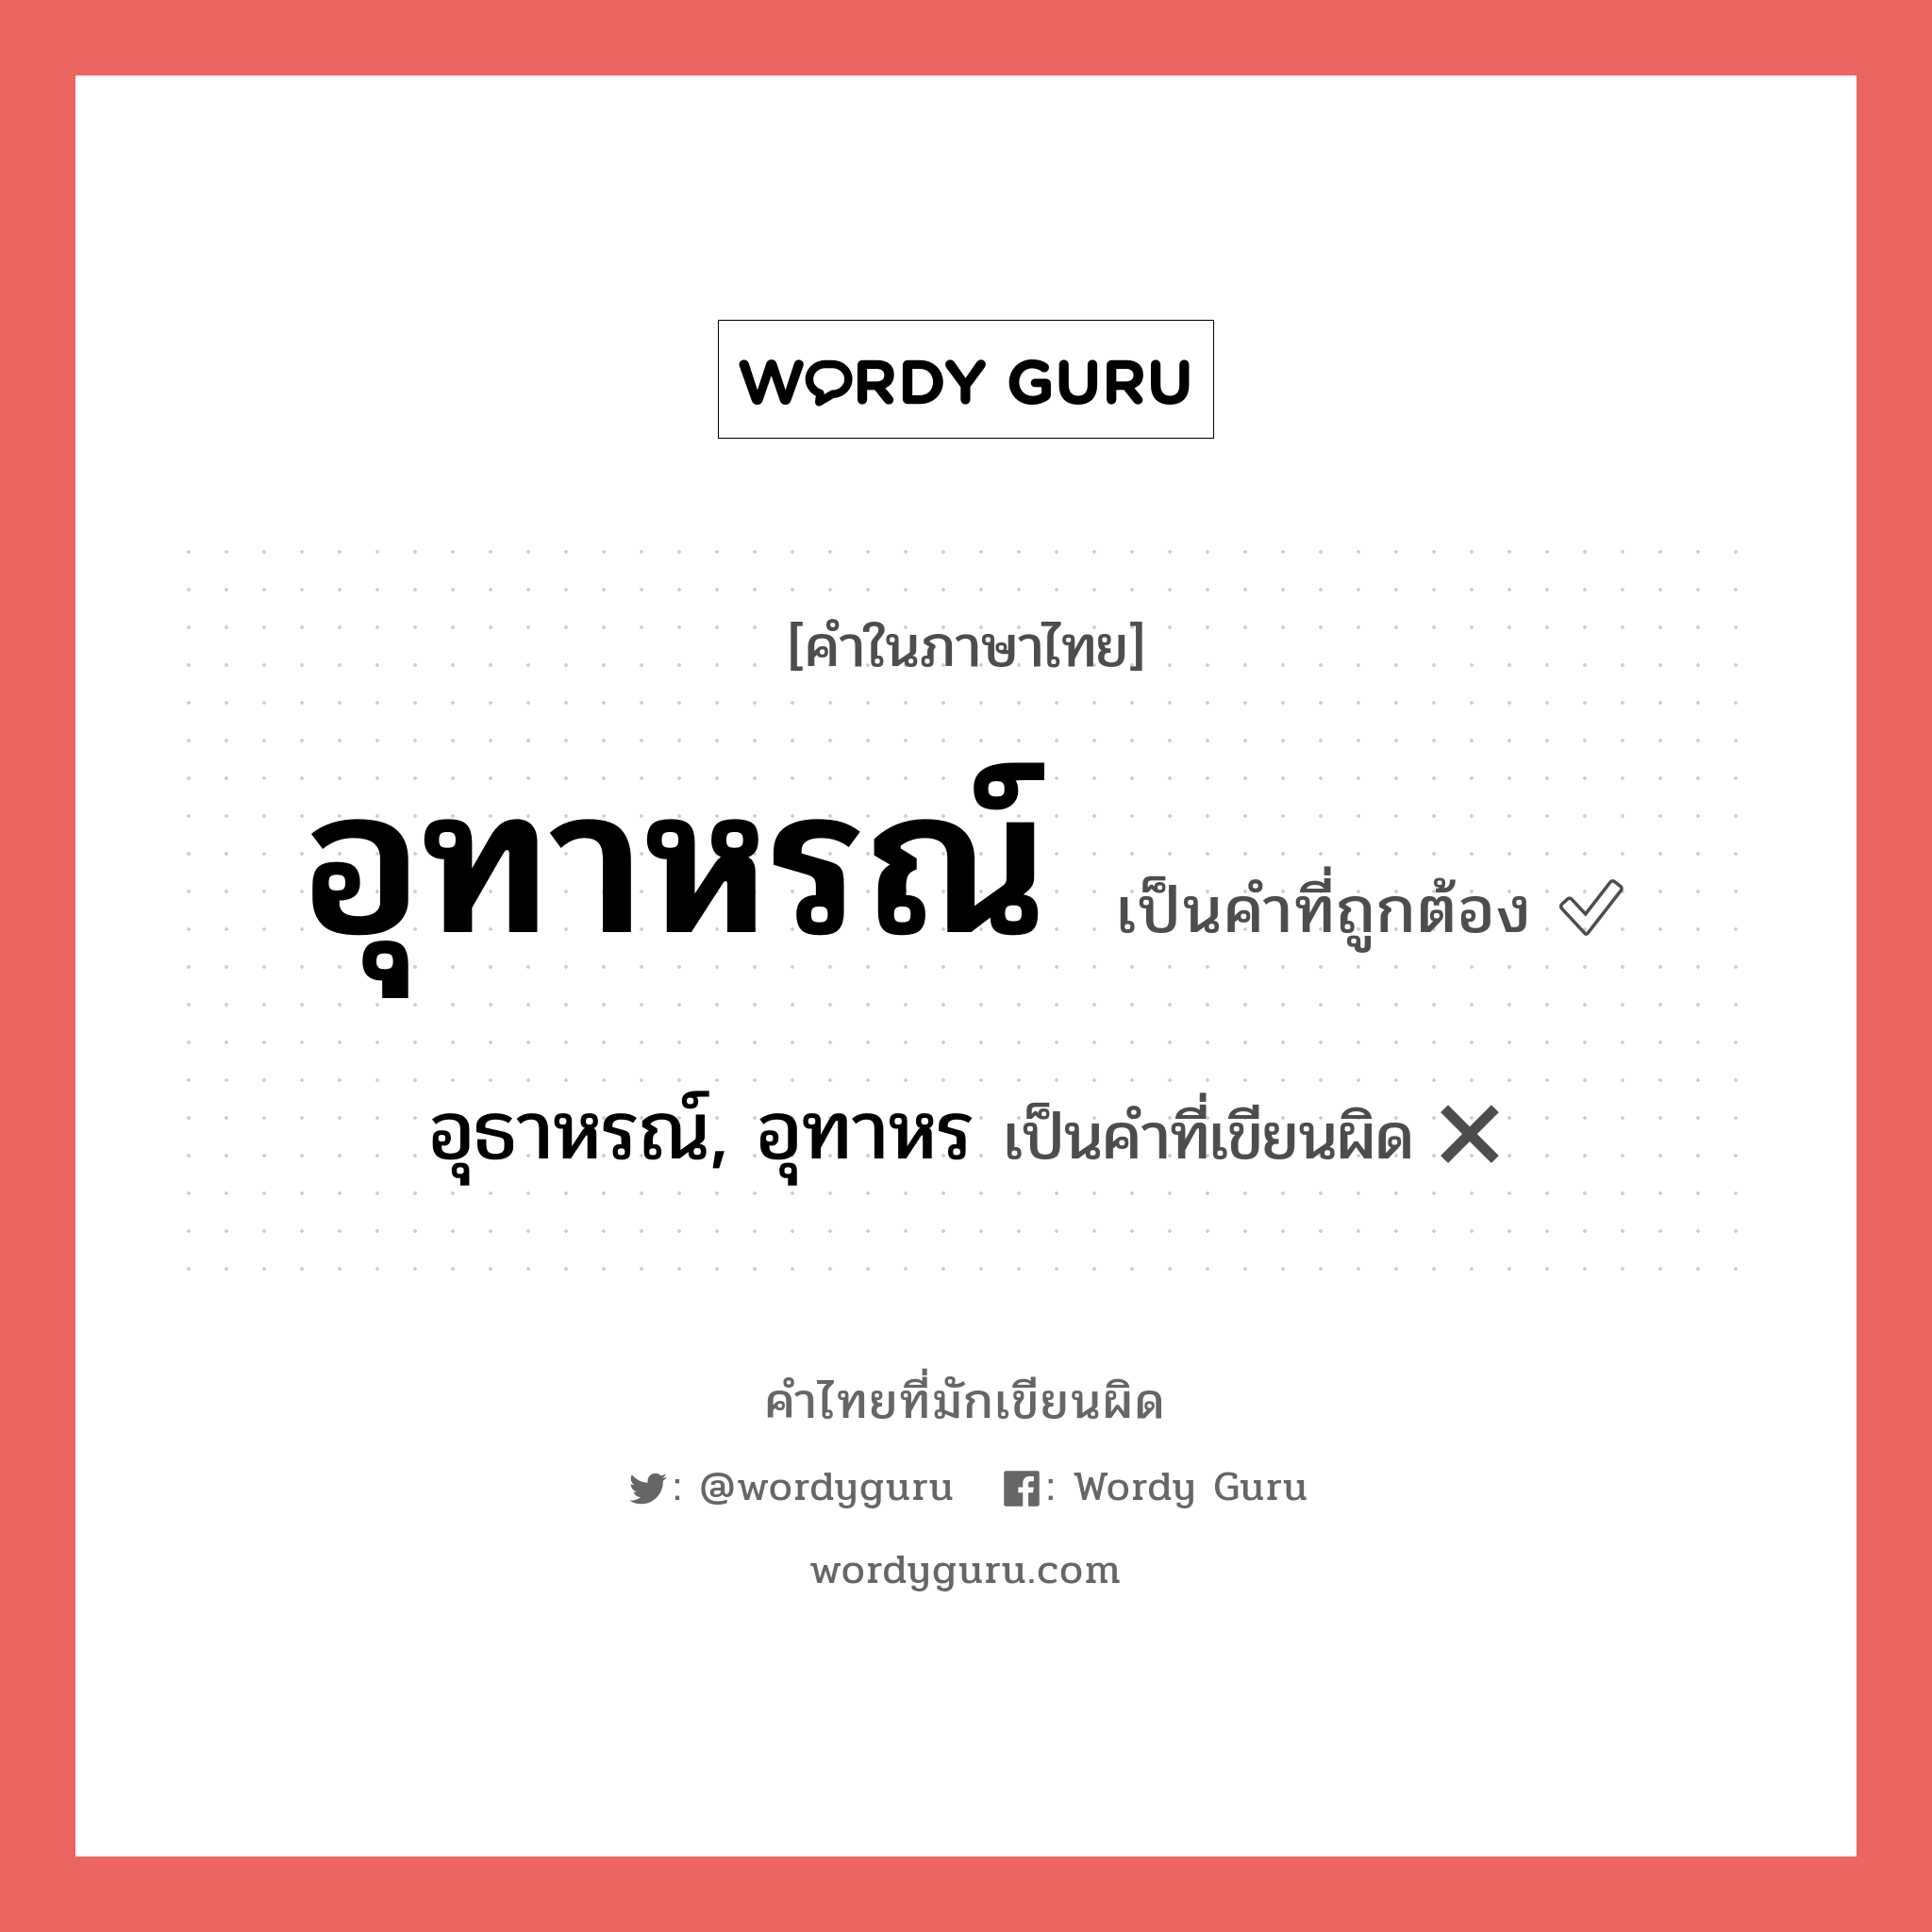 อุทาหรณ์ หรือ อุธาหรณ์, อุทาหร คำไหนเขียนถูก?, คำในภาษาไทยที่มักเขียนผิด อุทาหรณ์ คำที่ผิด ❌ อุธาหรณ์, อุทาหร